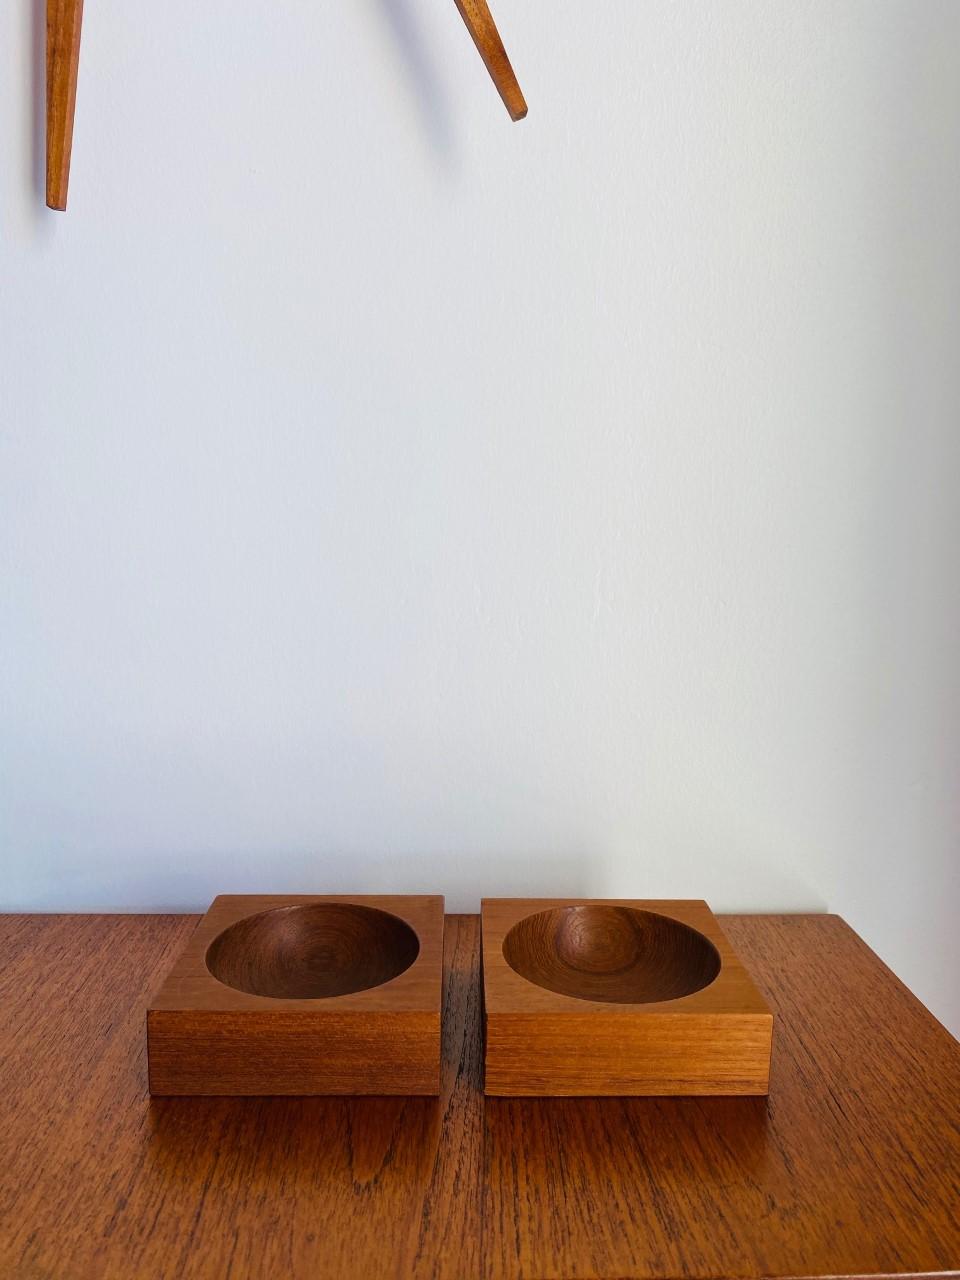 Schönes Paar Vintage-Schalen aus Teakholz. Diese kleinen Holzgefäße sind minimalistisch gestaltet. Das Holz ist japanischen Ursprungs, die Maserung und das Design sind linear und ehrlich. Jedes Quadrat hat eine makellose Form, da sich in der Mitte